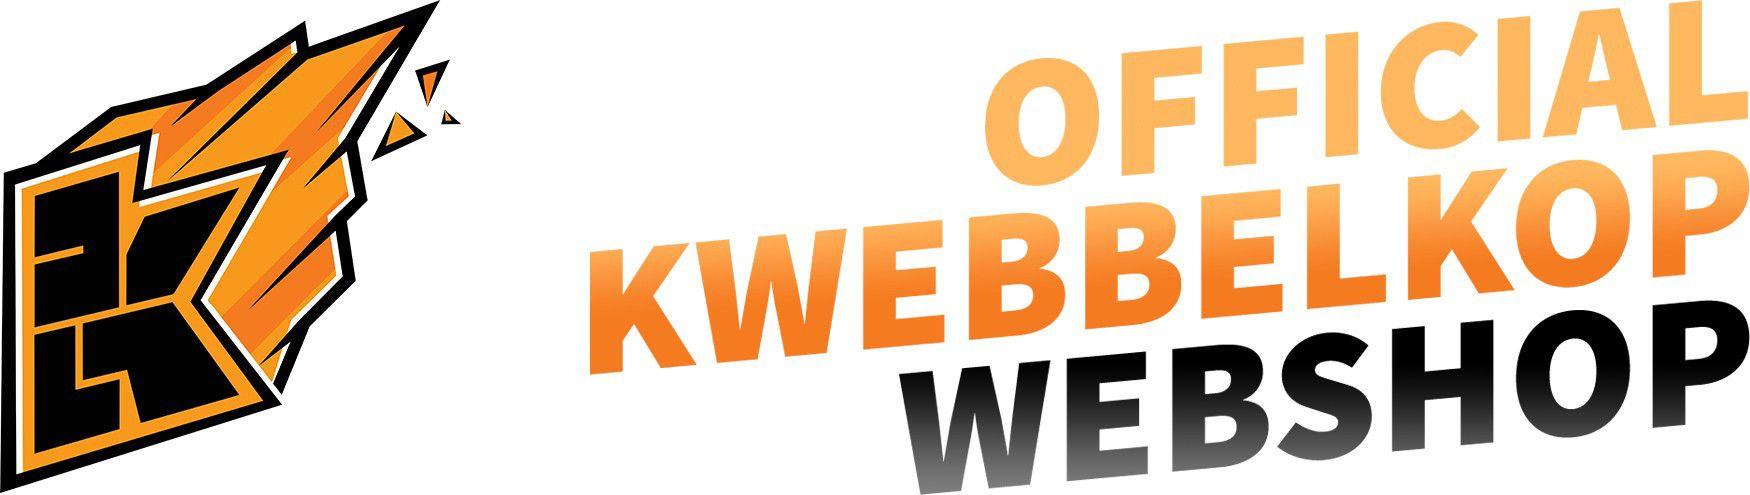 Kwebblekop Logo - Kwebbelkop Webshop